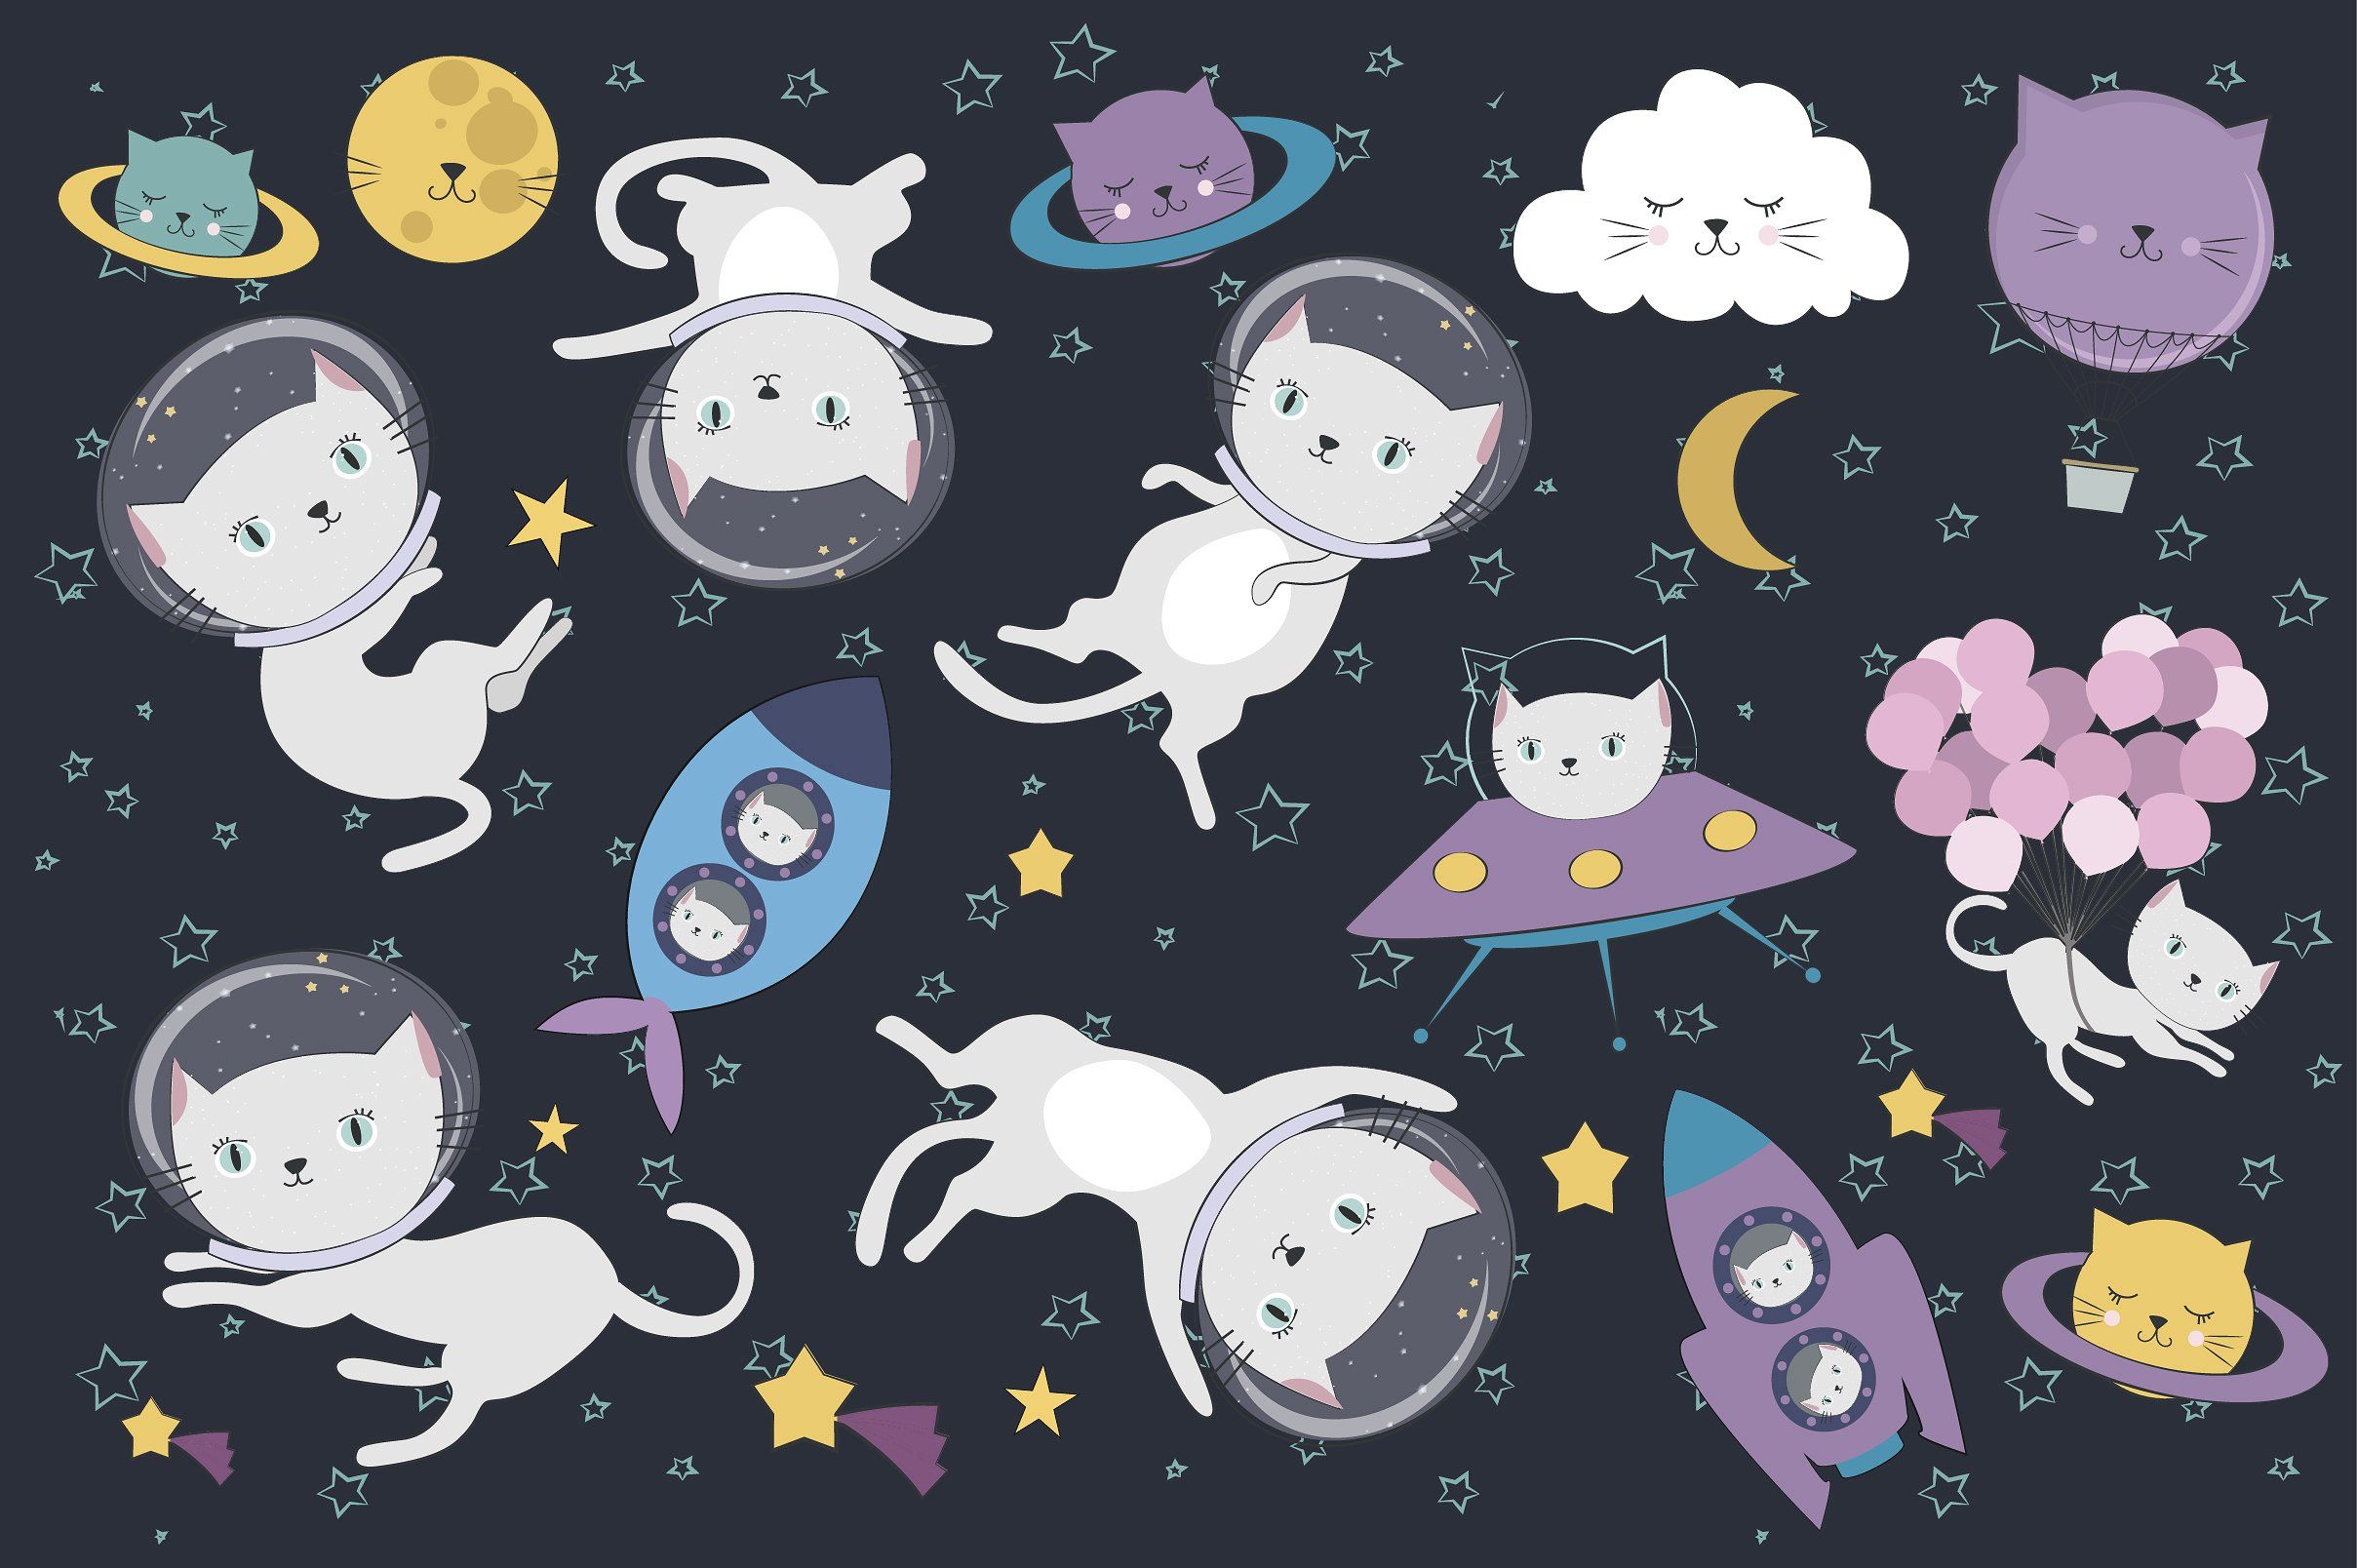 Astronaut Cat Wallpapers